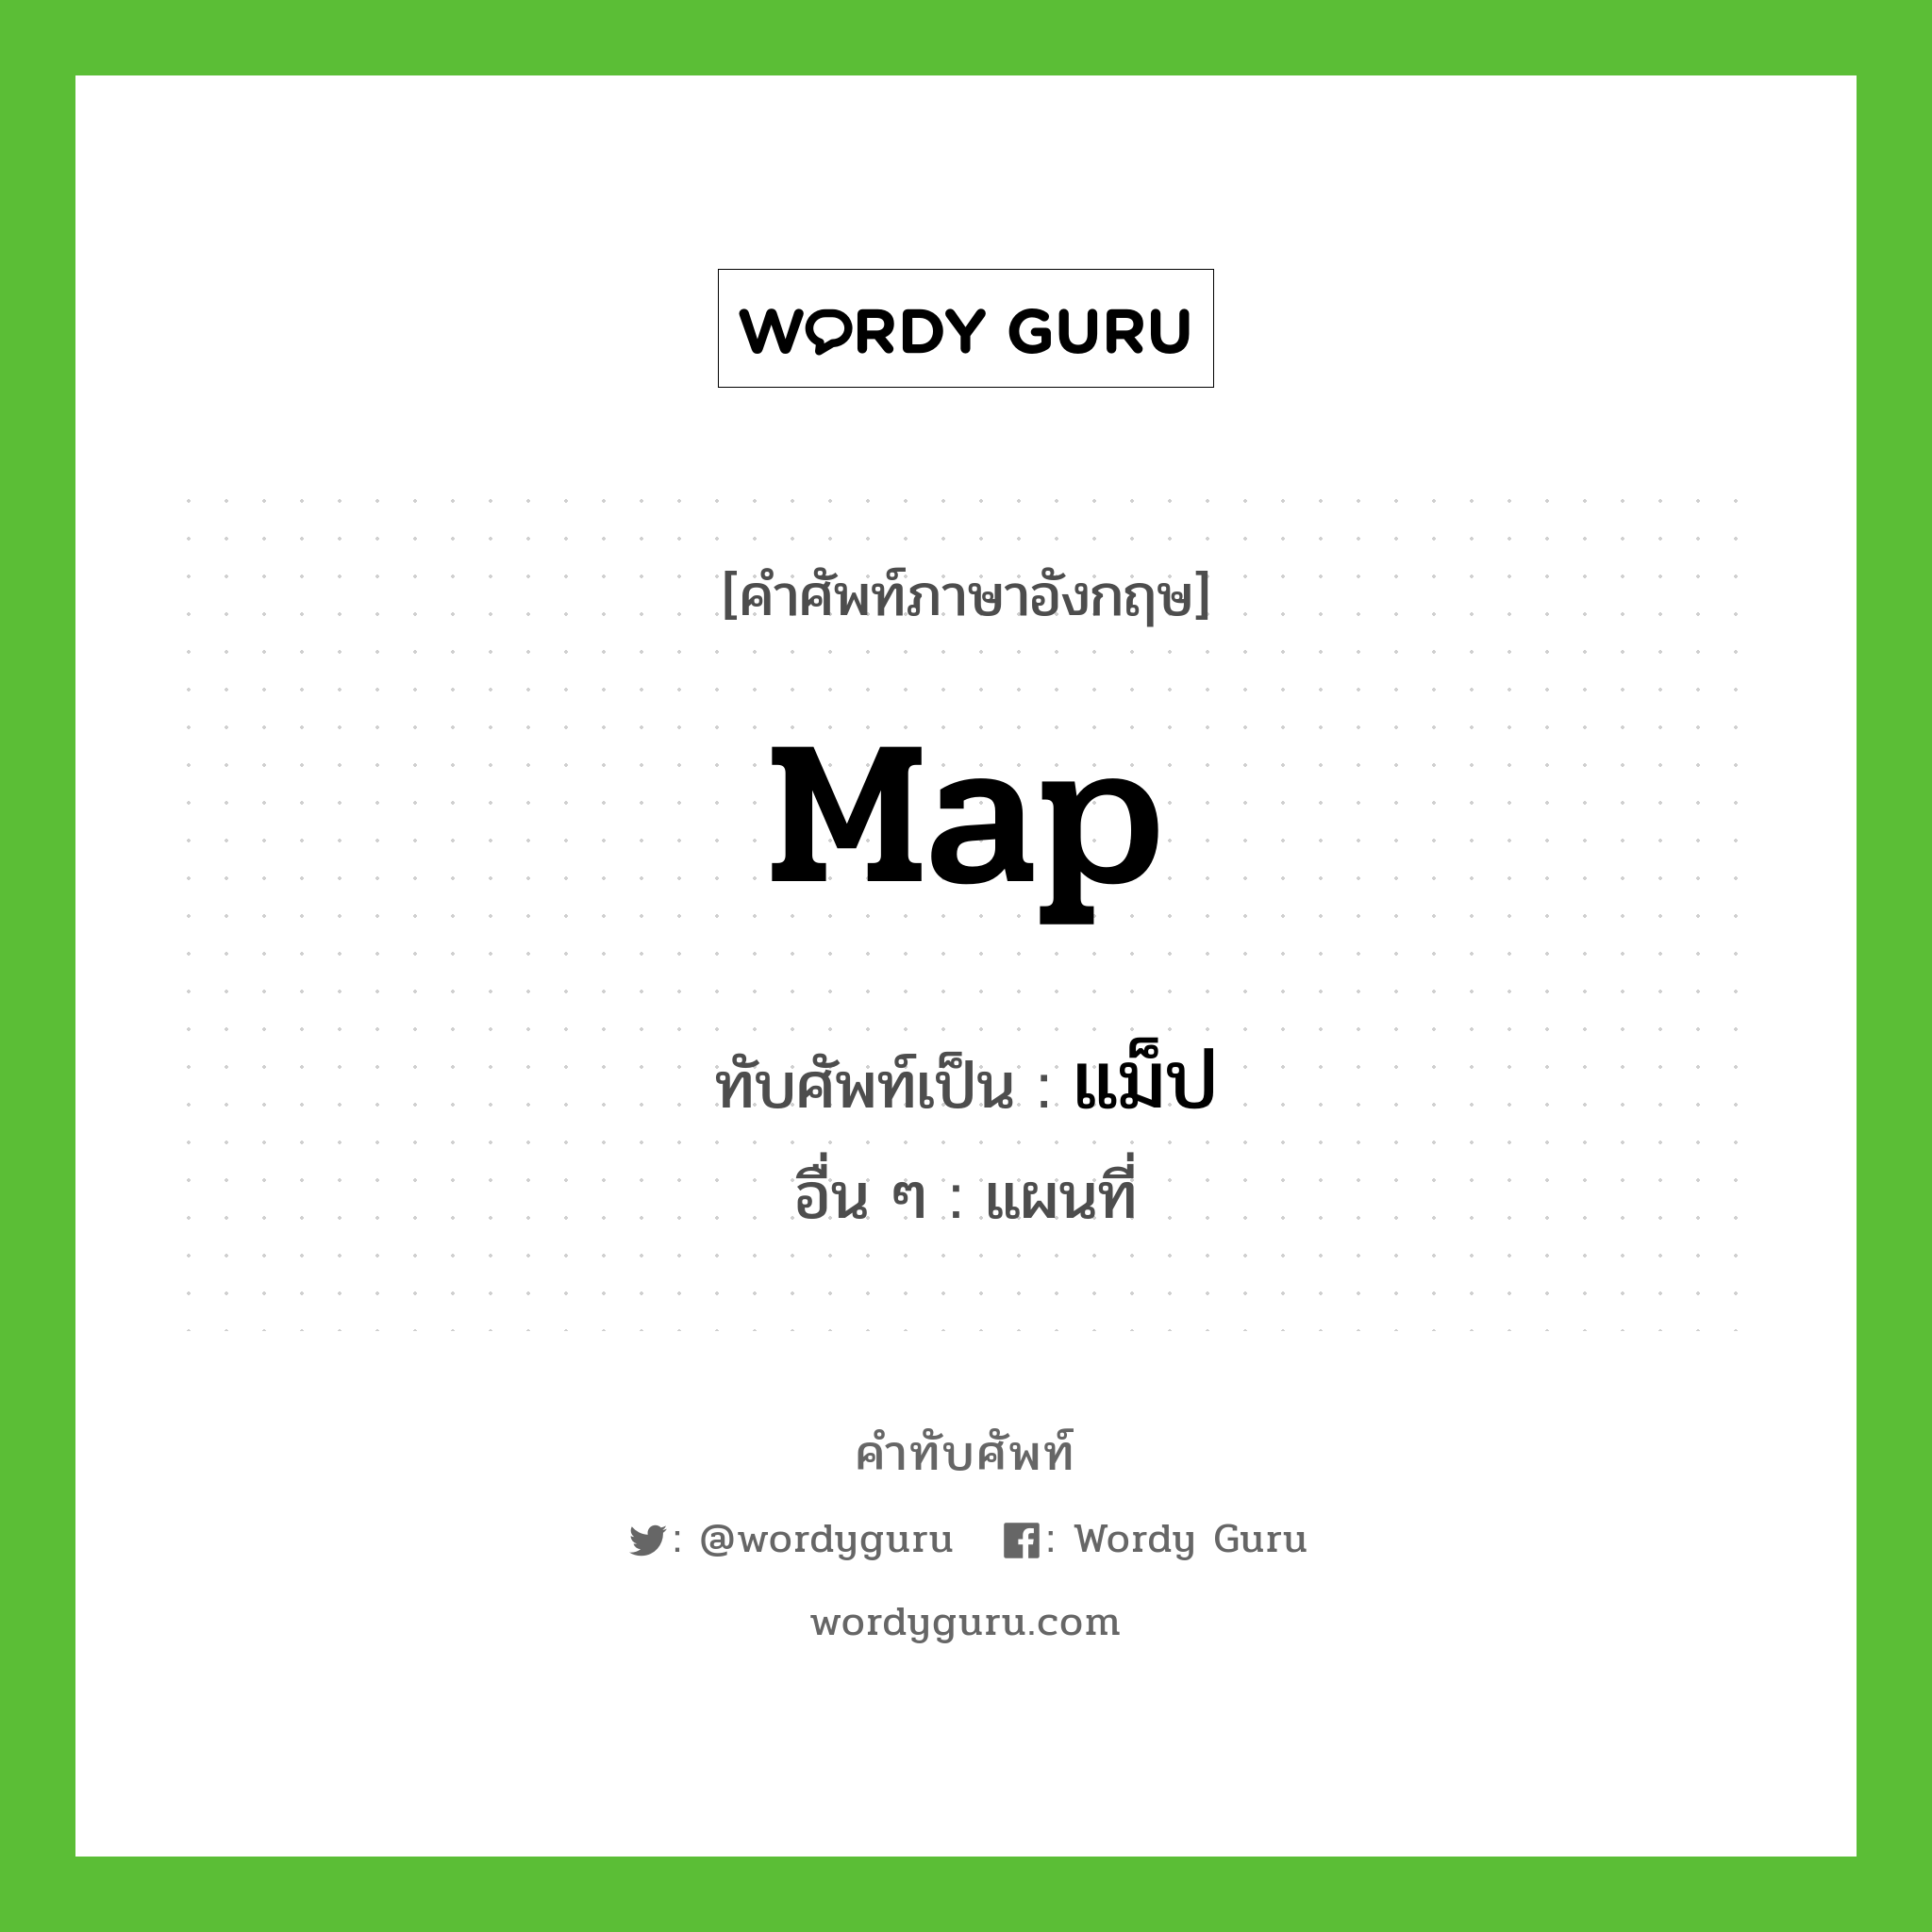 map เขียนเป็นคำไทยว่าอะไร?, คำศัพท์ภาษาอังกฤษ map ทับศัพท์เป็น แม็ป อื่น ๆ แผนที่